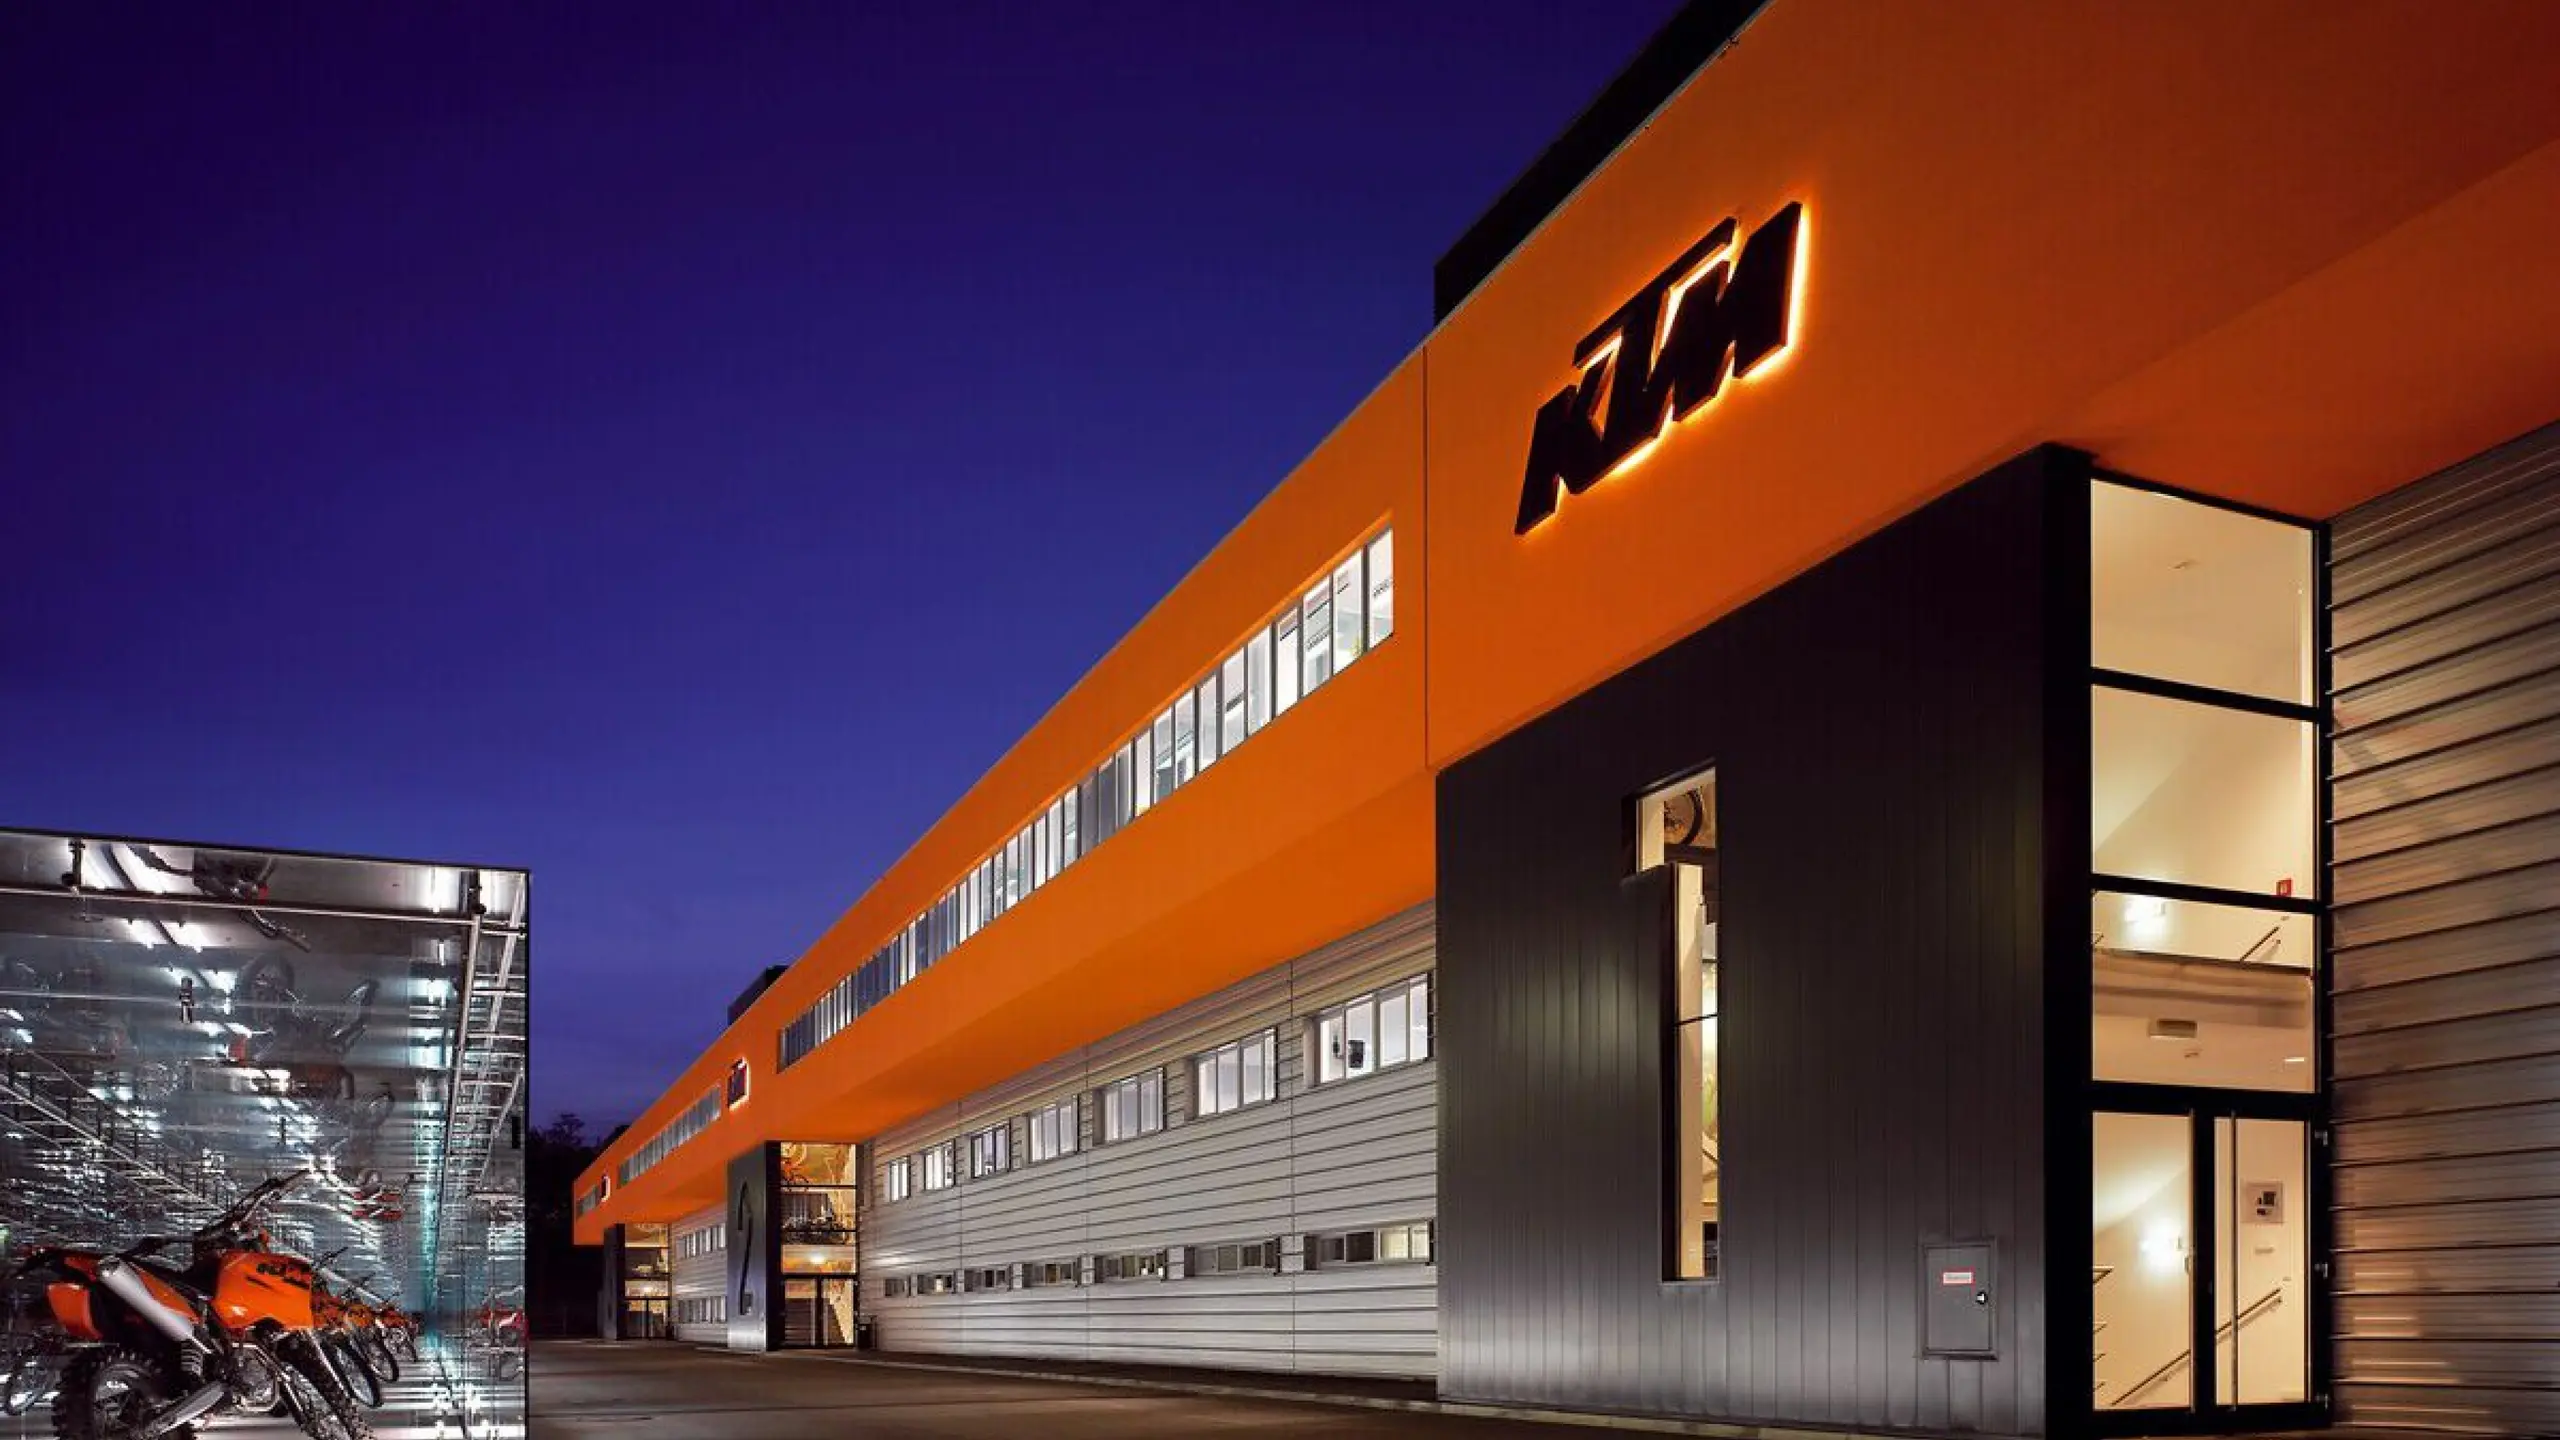 Das KTM Motorrad Headquarter der Pierer Mobility AG in Mattighofen